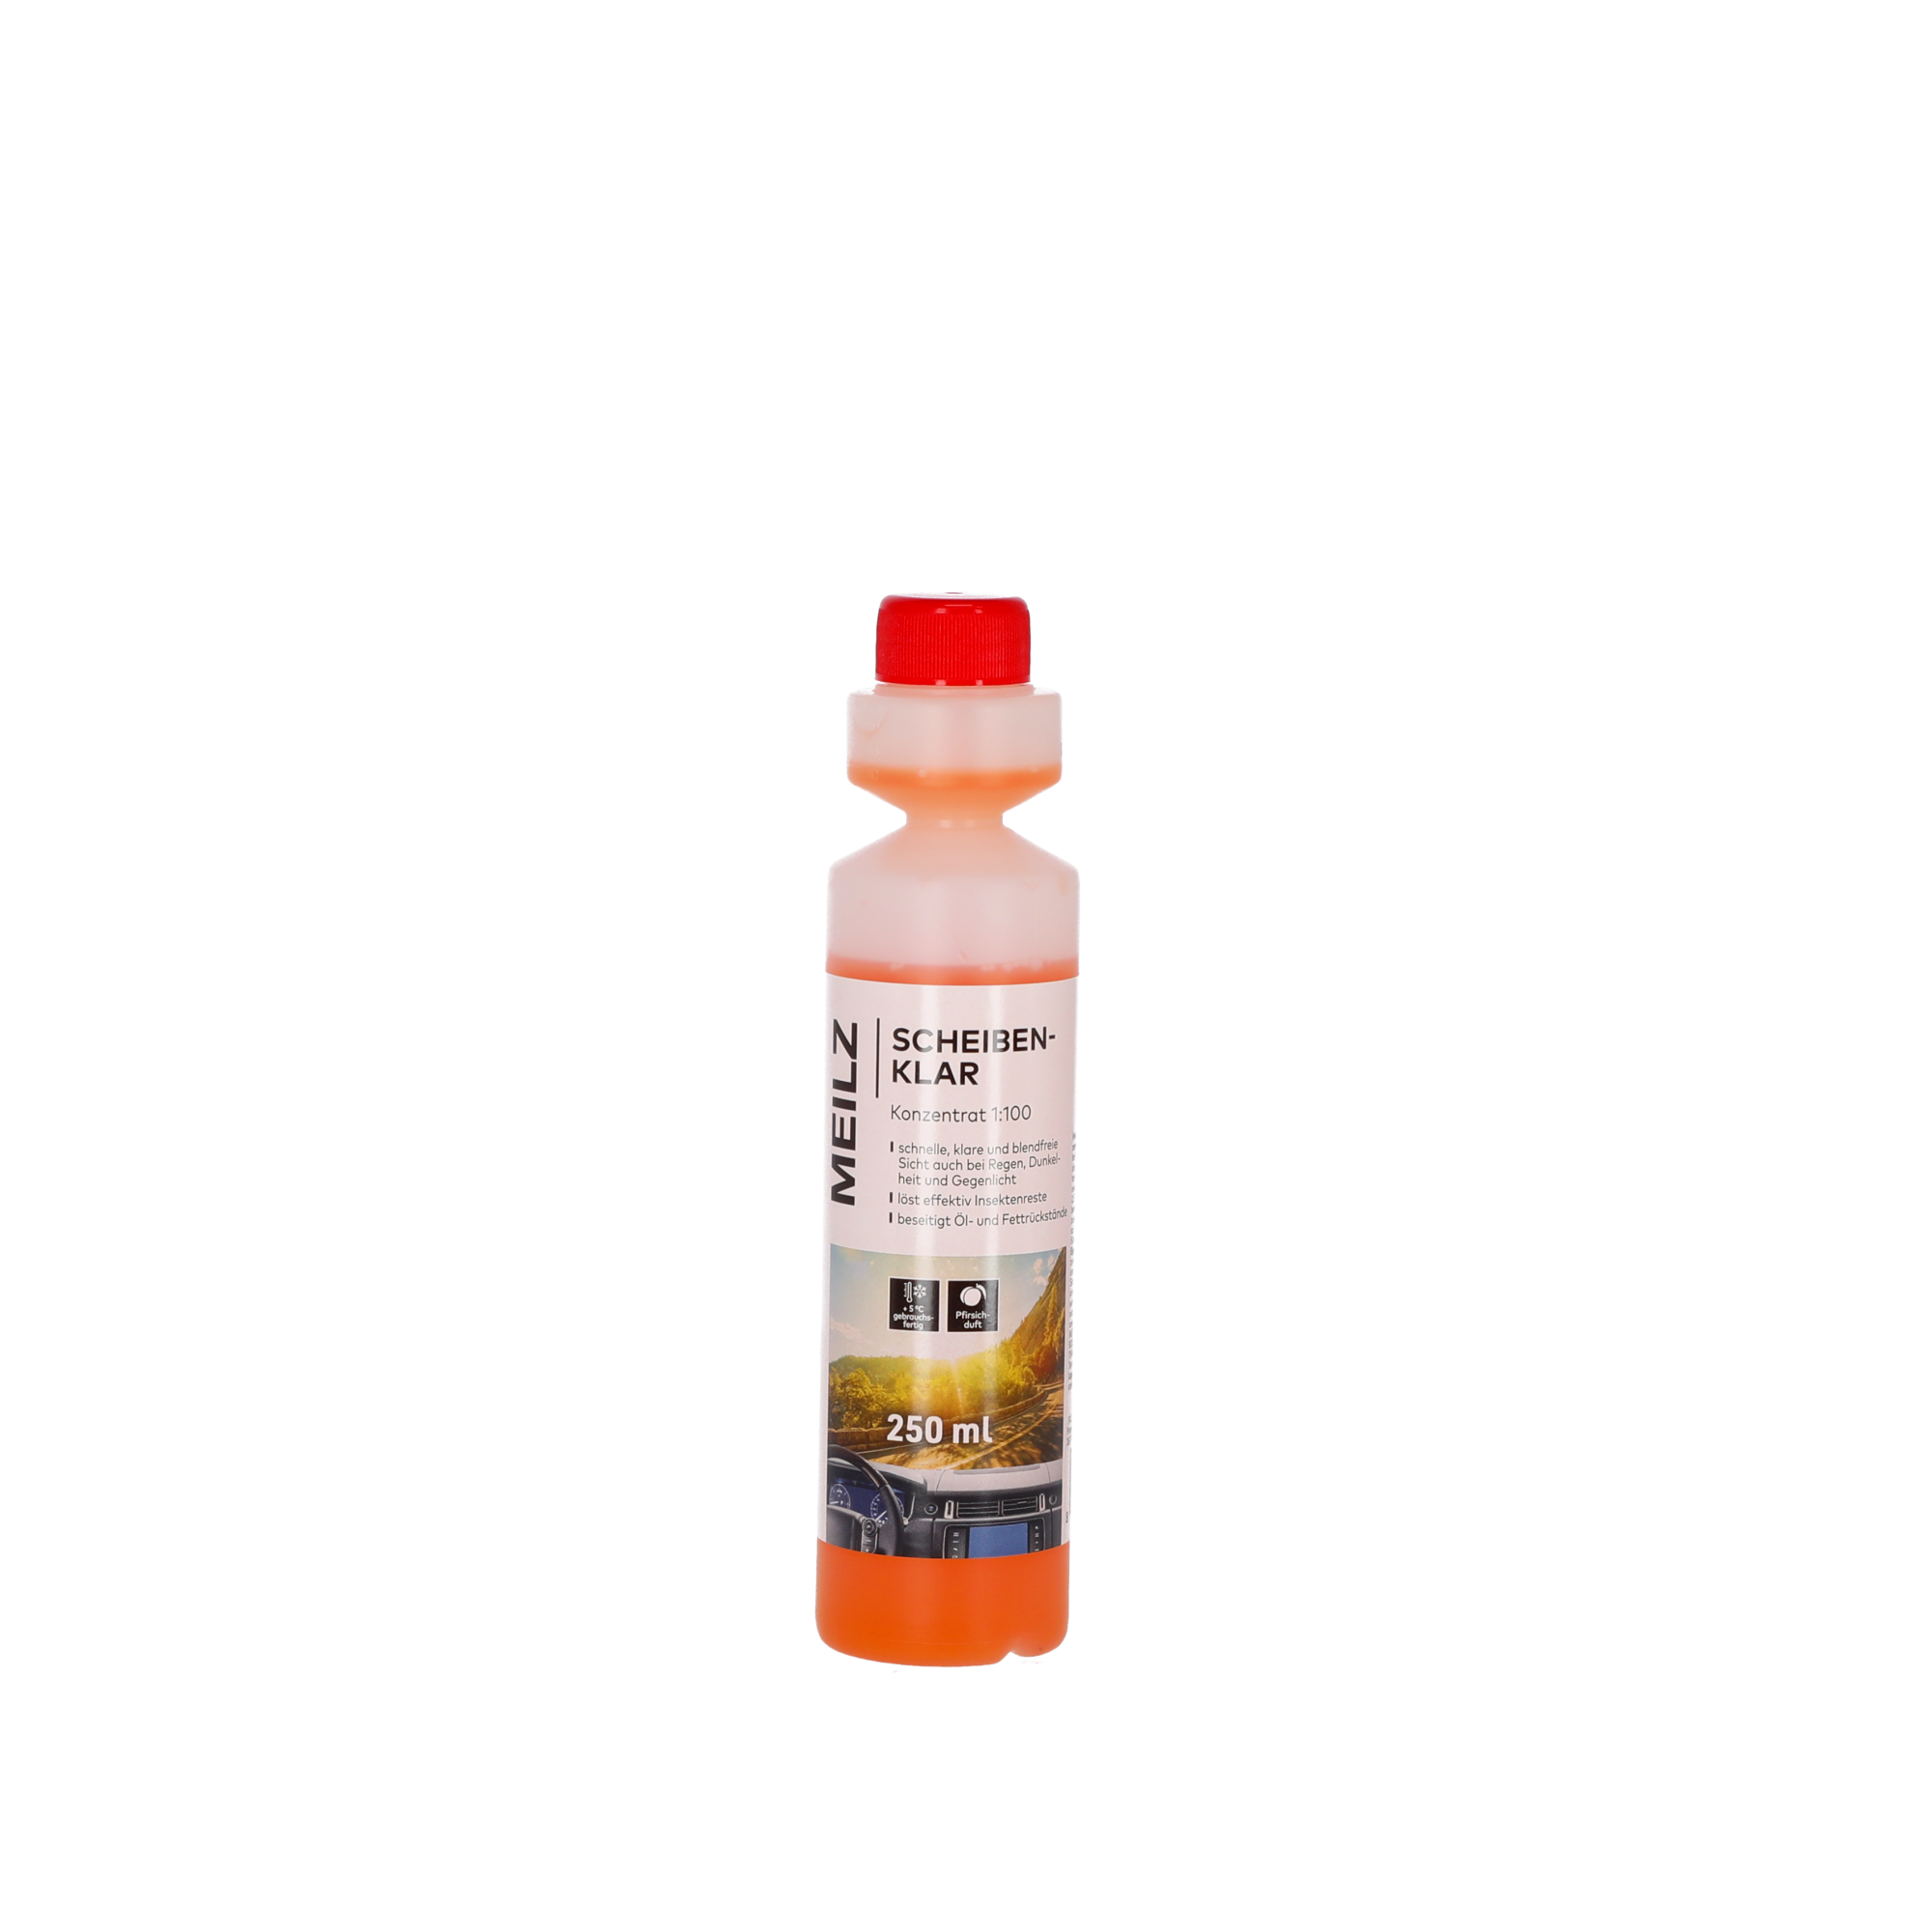 Scheibenklar-Konzentrat 'Pfirsich' 250 ml + product picture